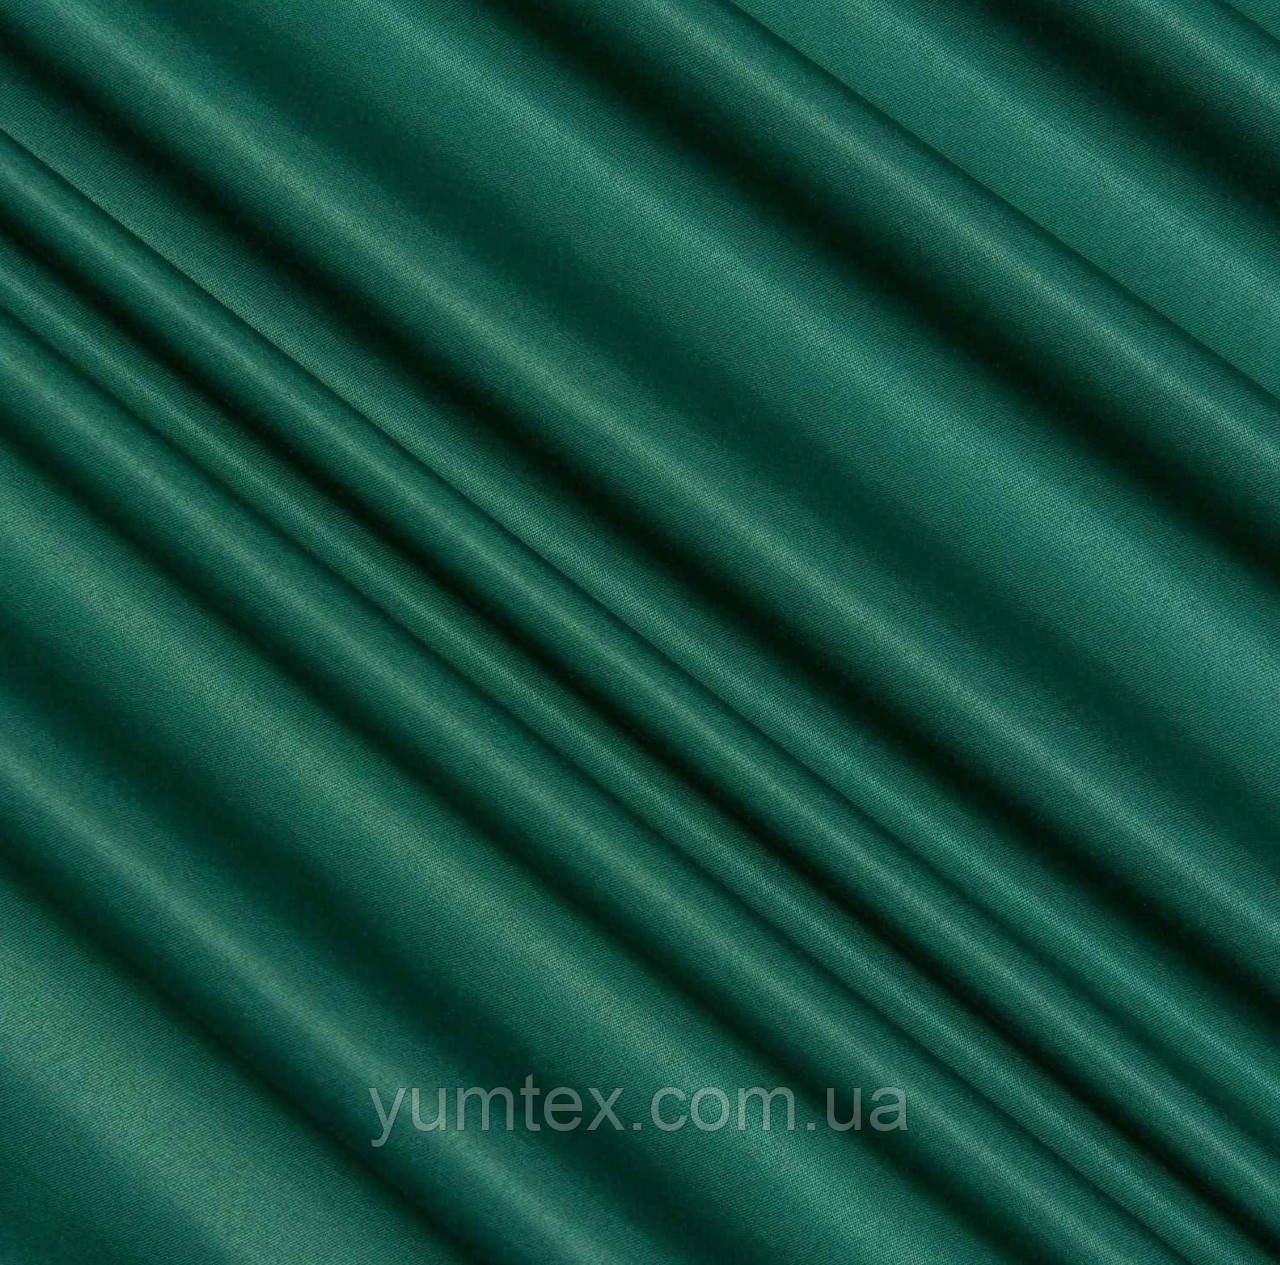 Тканина грета водовідштовхувальна 53% бавовни для халатів комбінезонів спецодягу костюмів роби темно-зелена